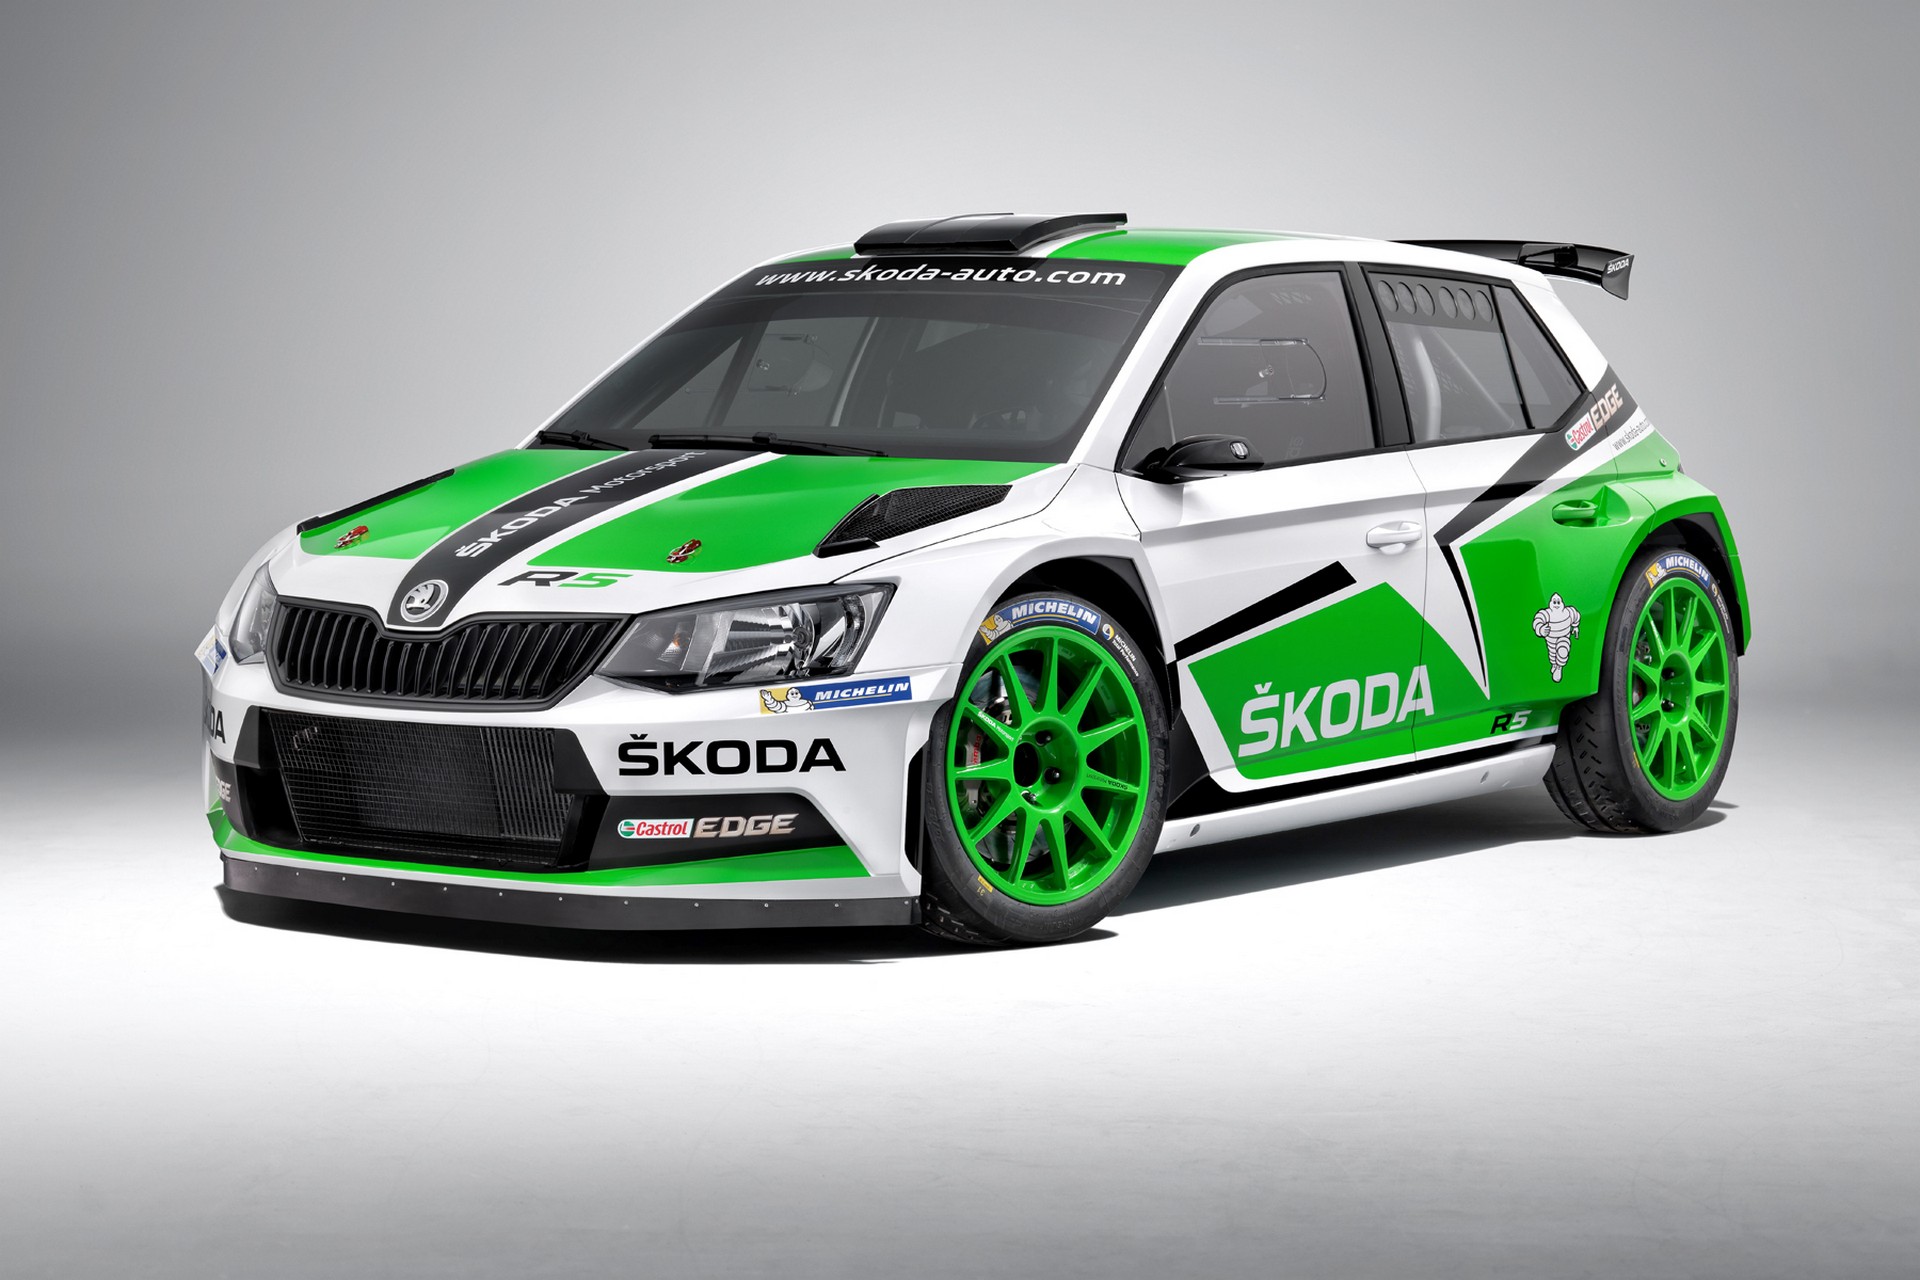 ŠKODA conquista il Titolo Mondiale Rally 2017 con la speciale Fabia R5 edition